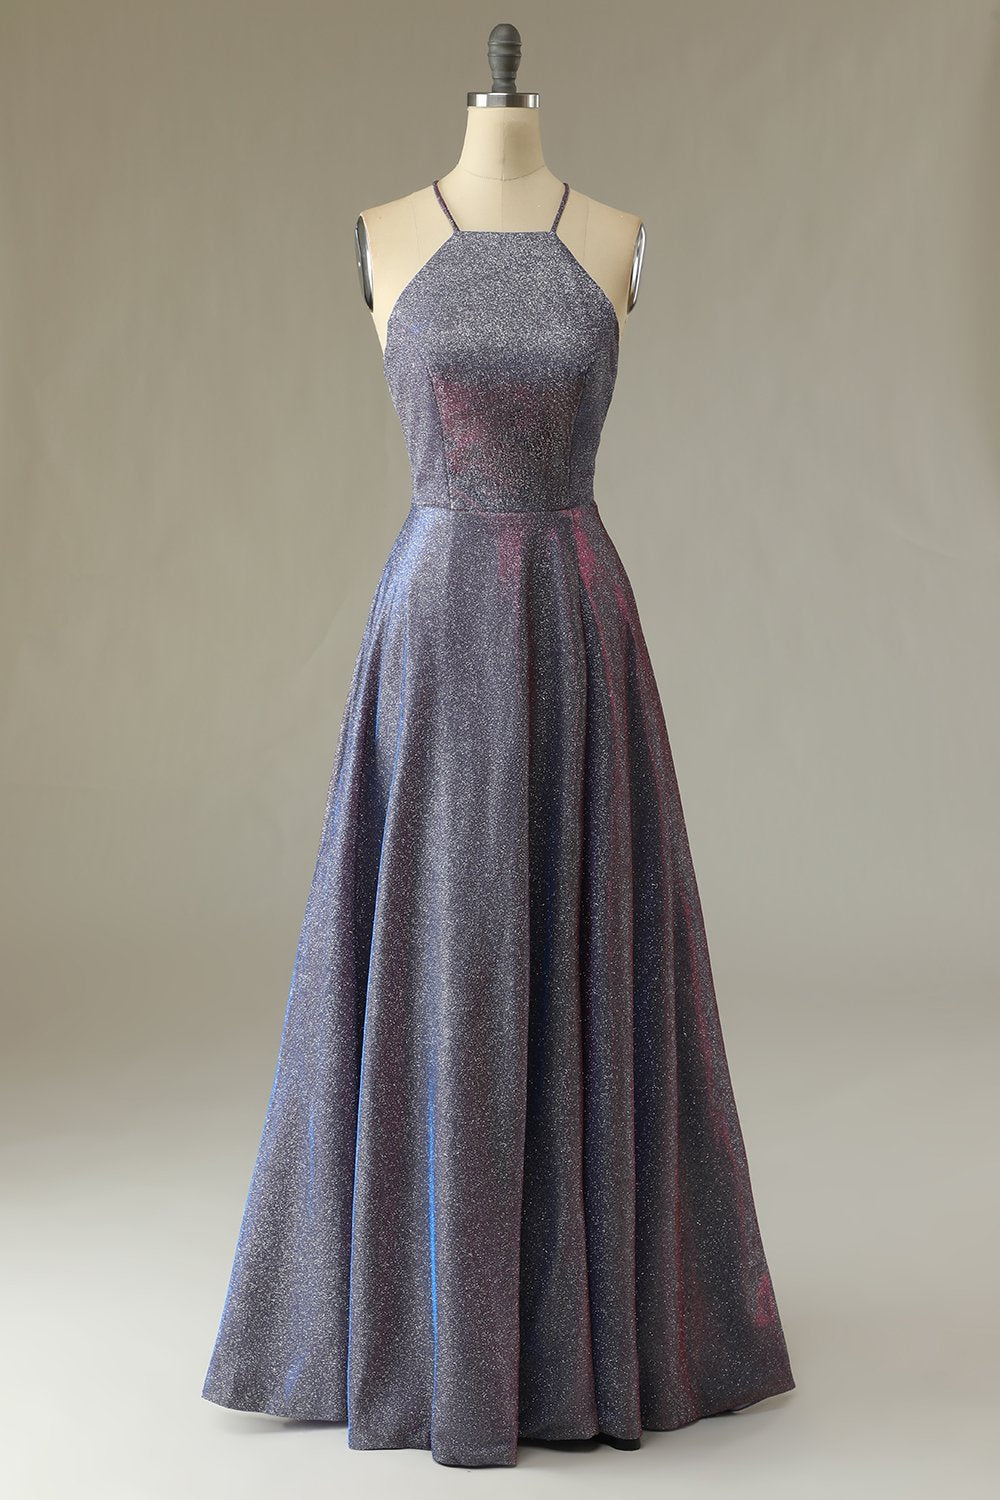 Glitter Purple Long Formal Dress